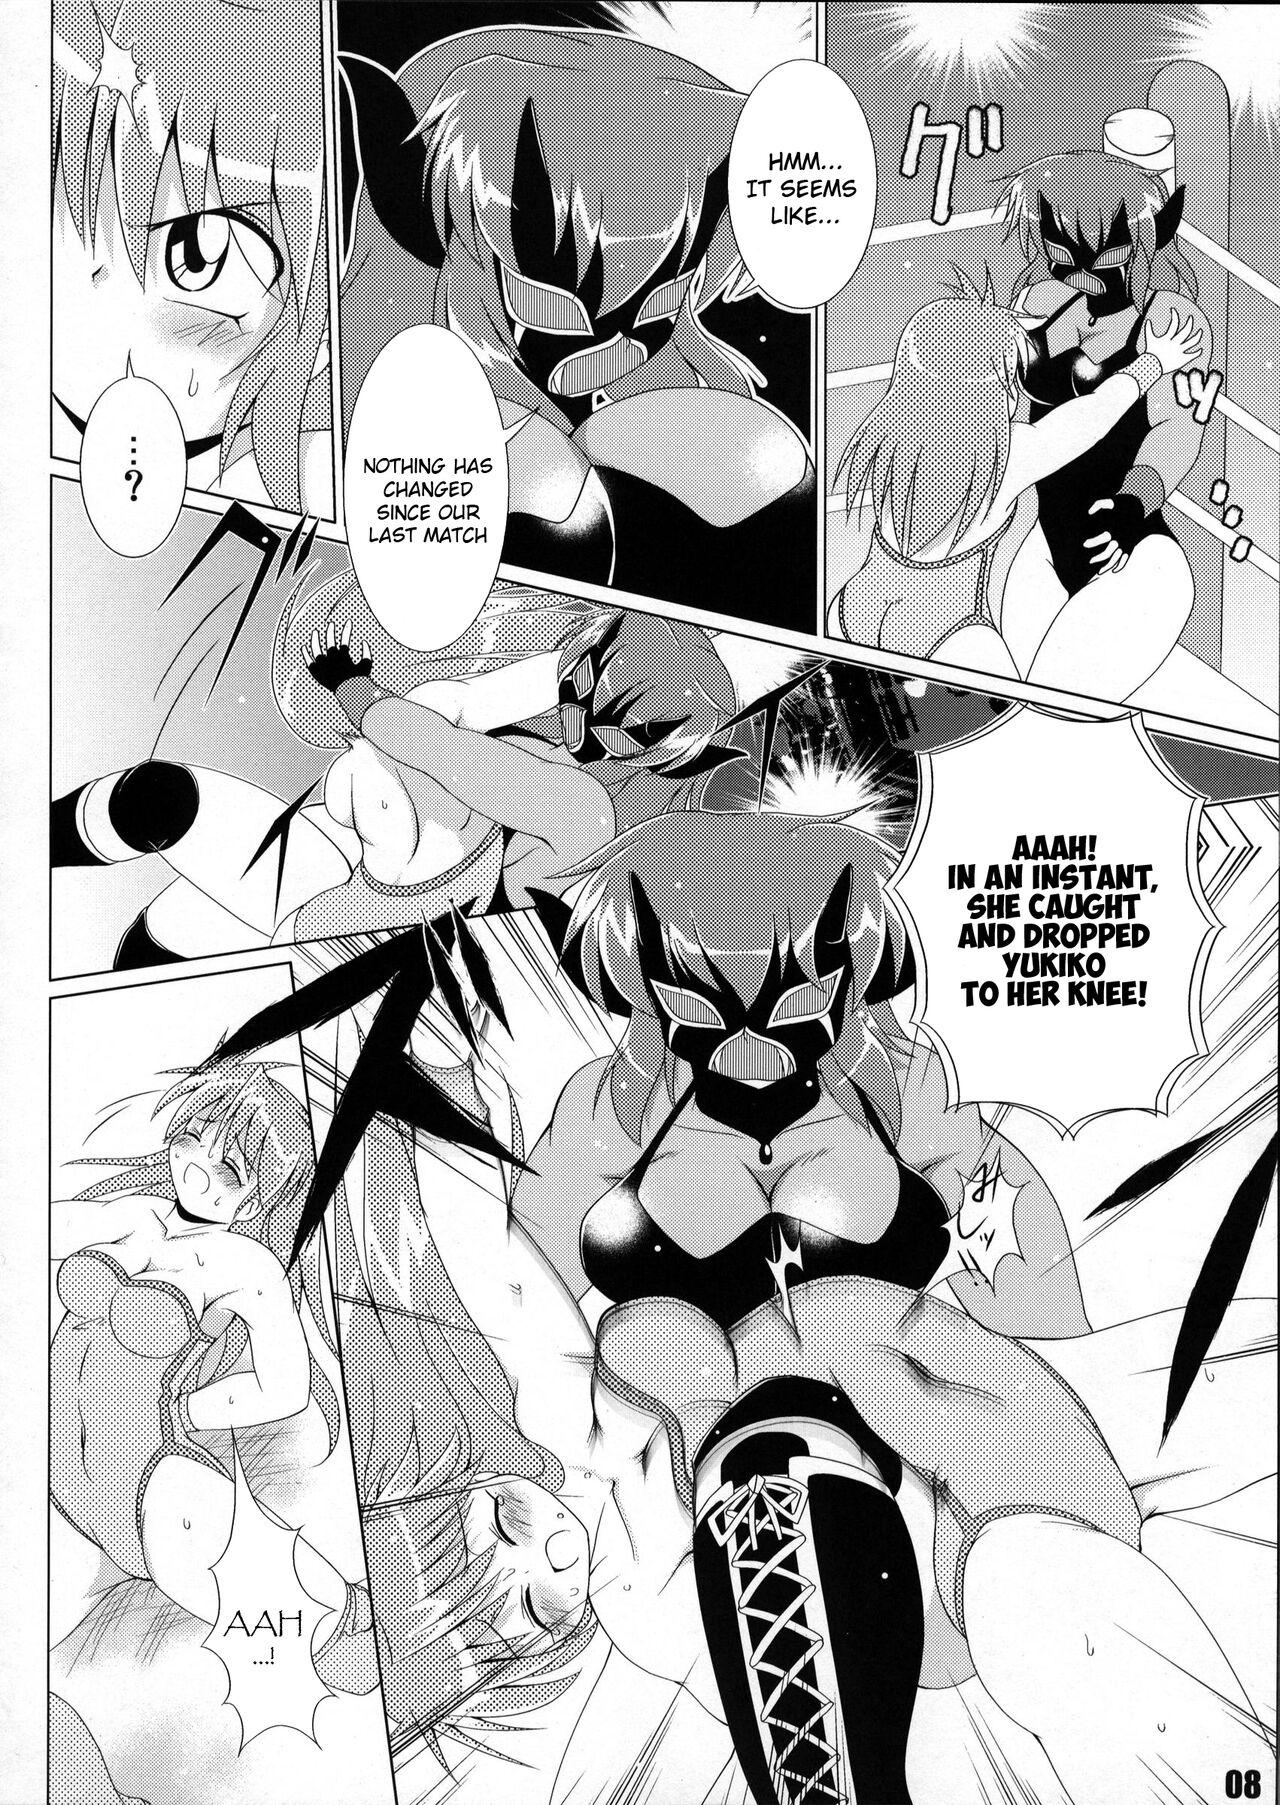 Soapy Massage (COMIC1☆6) [Soket=Pocket (Soket)] Mighty Yukiko vs Dark Star Chaos (FALLIN' ANGELS4 (WRESTLE ANGELS)) - Wrestle angels Girlnextdoor - Page 4